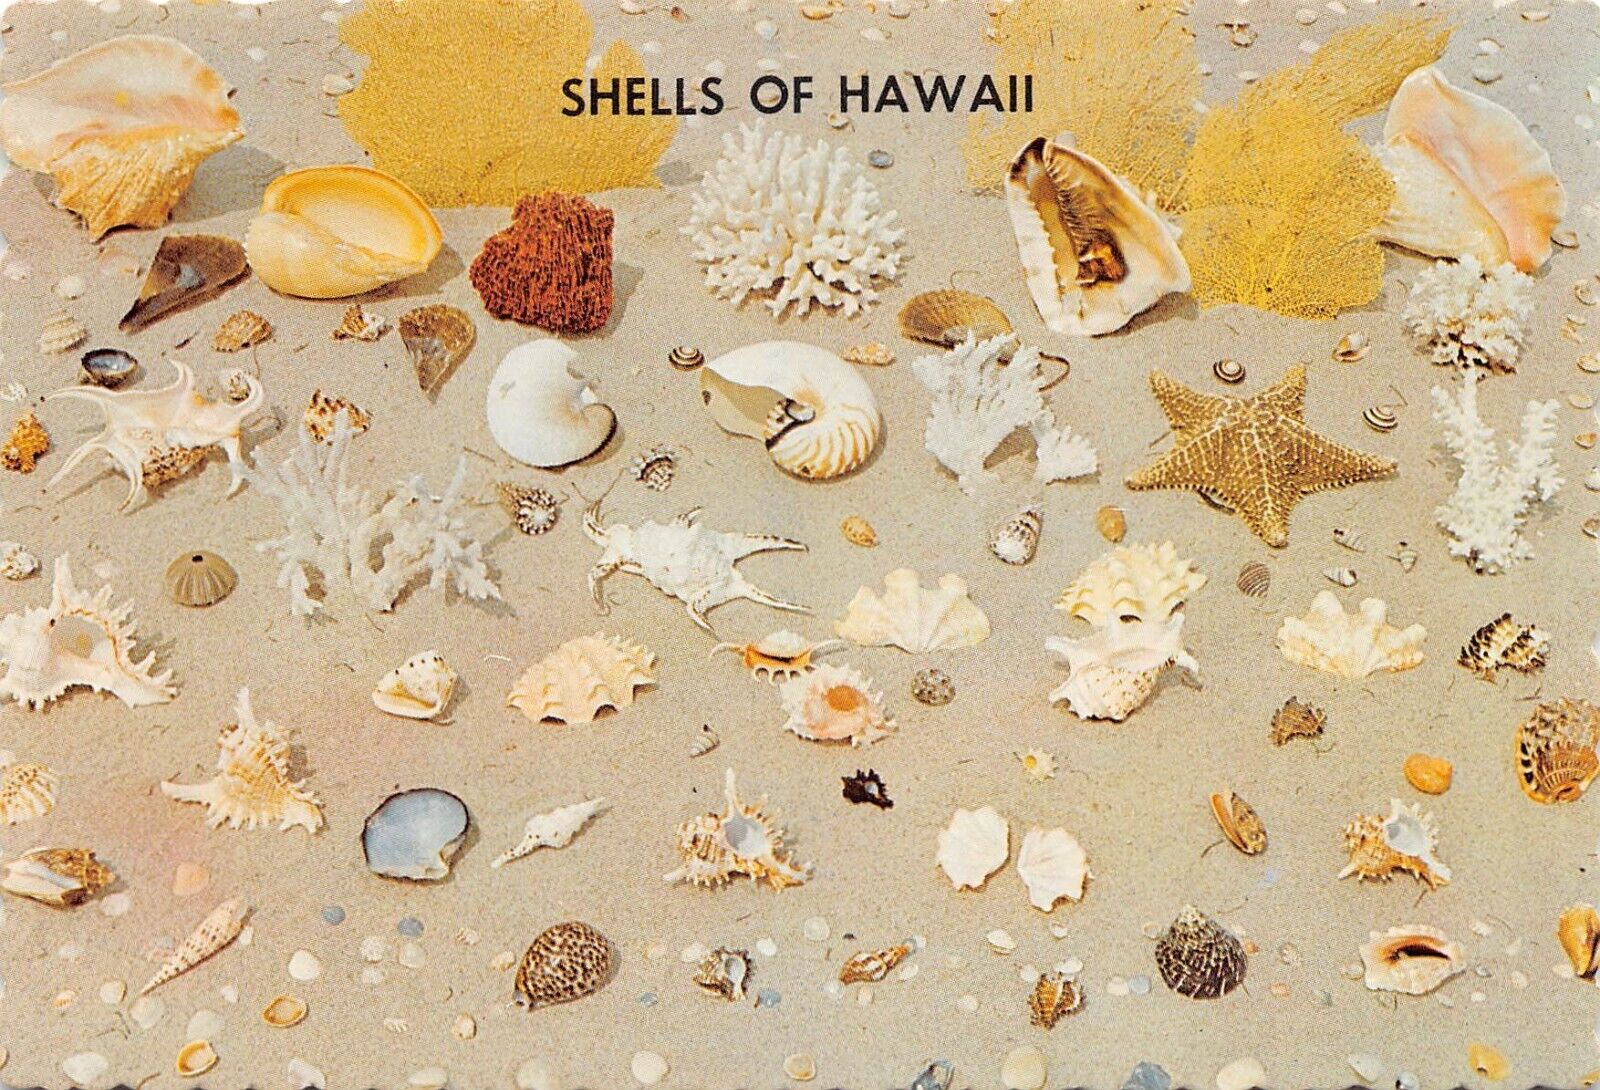 Seashells of HI Hawaii Postcard 7162c